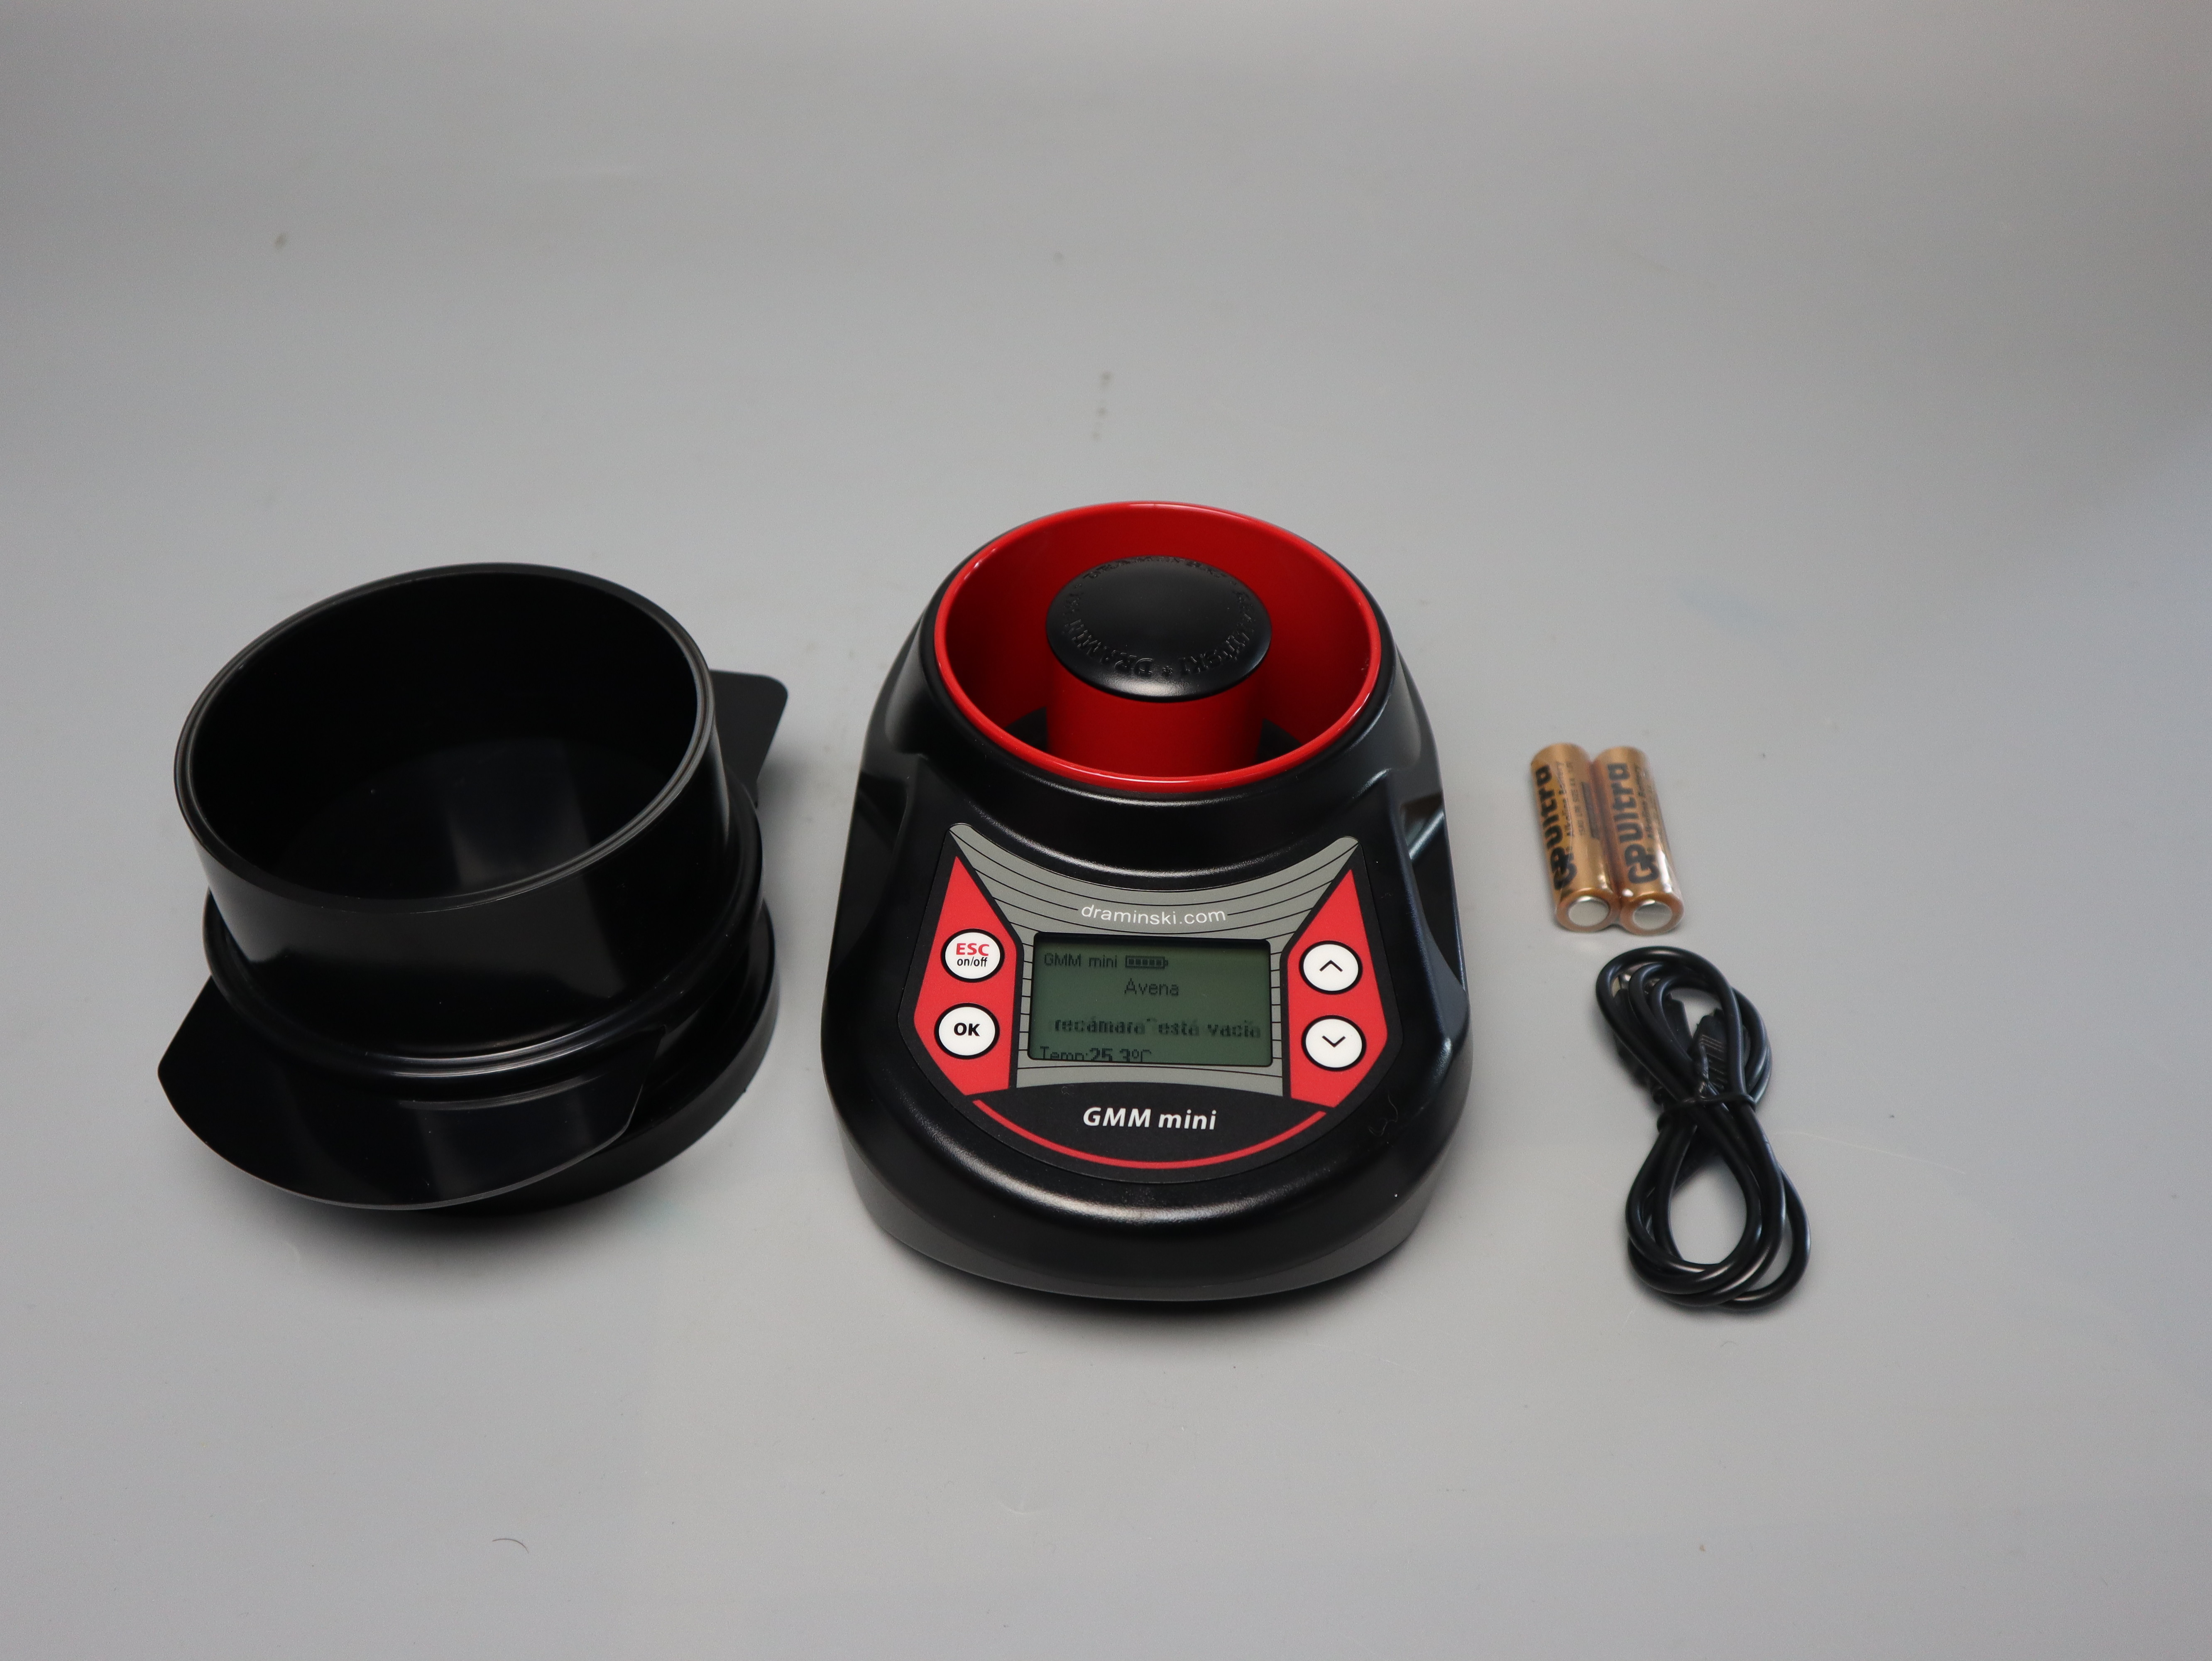 Dr.meter Medidor digital de pH de agua, pluma de prueba de pH de alta  precisión de 0.01 con retroiluminación y retención de datos, rango de  medición